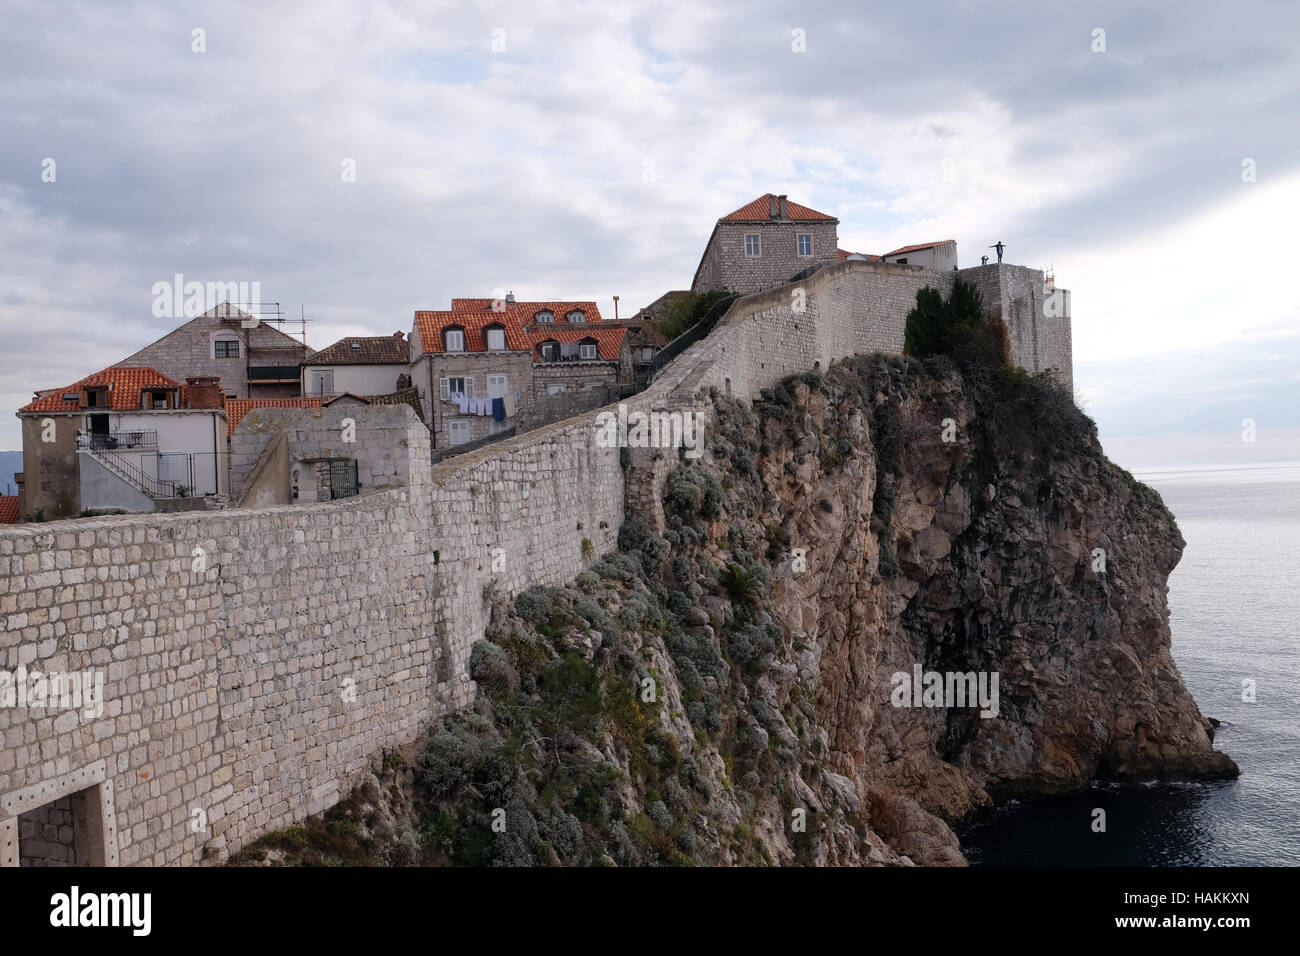 Les murs de défense de la vieille ville de Dubrovnik, une forteresse médiéval bien préservé et une destination touristique populaire, Croatie Banque D'Images